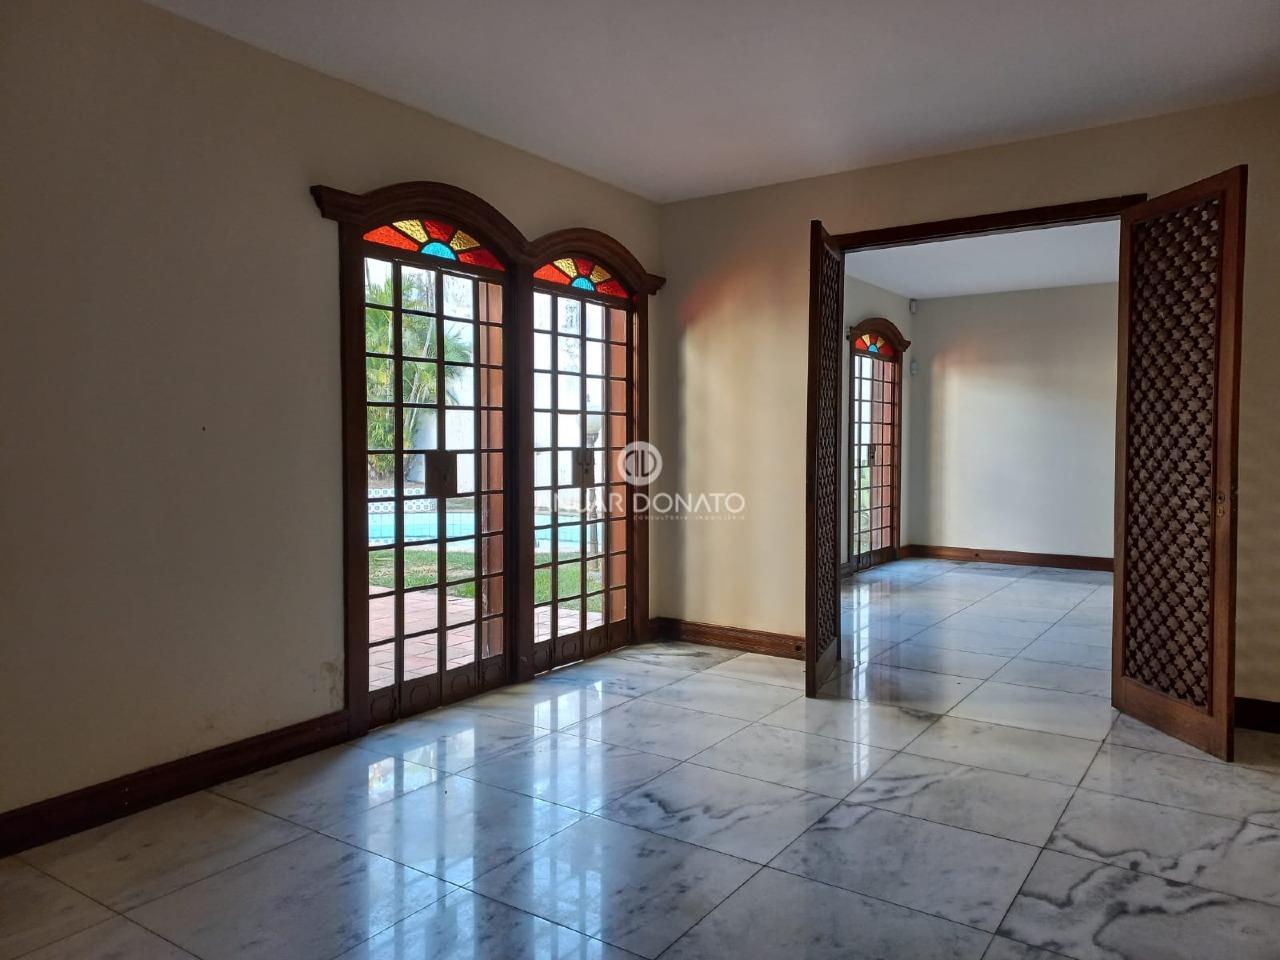 Anuar Donato Casa Residencial 4 quartos à venda Cidade Jardim: 